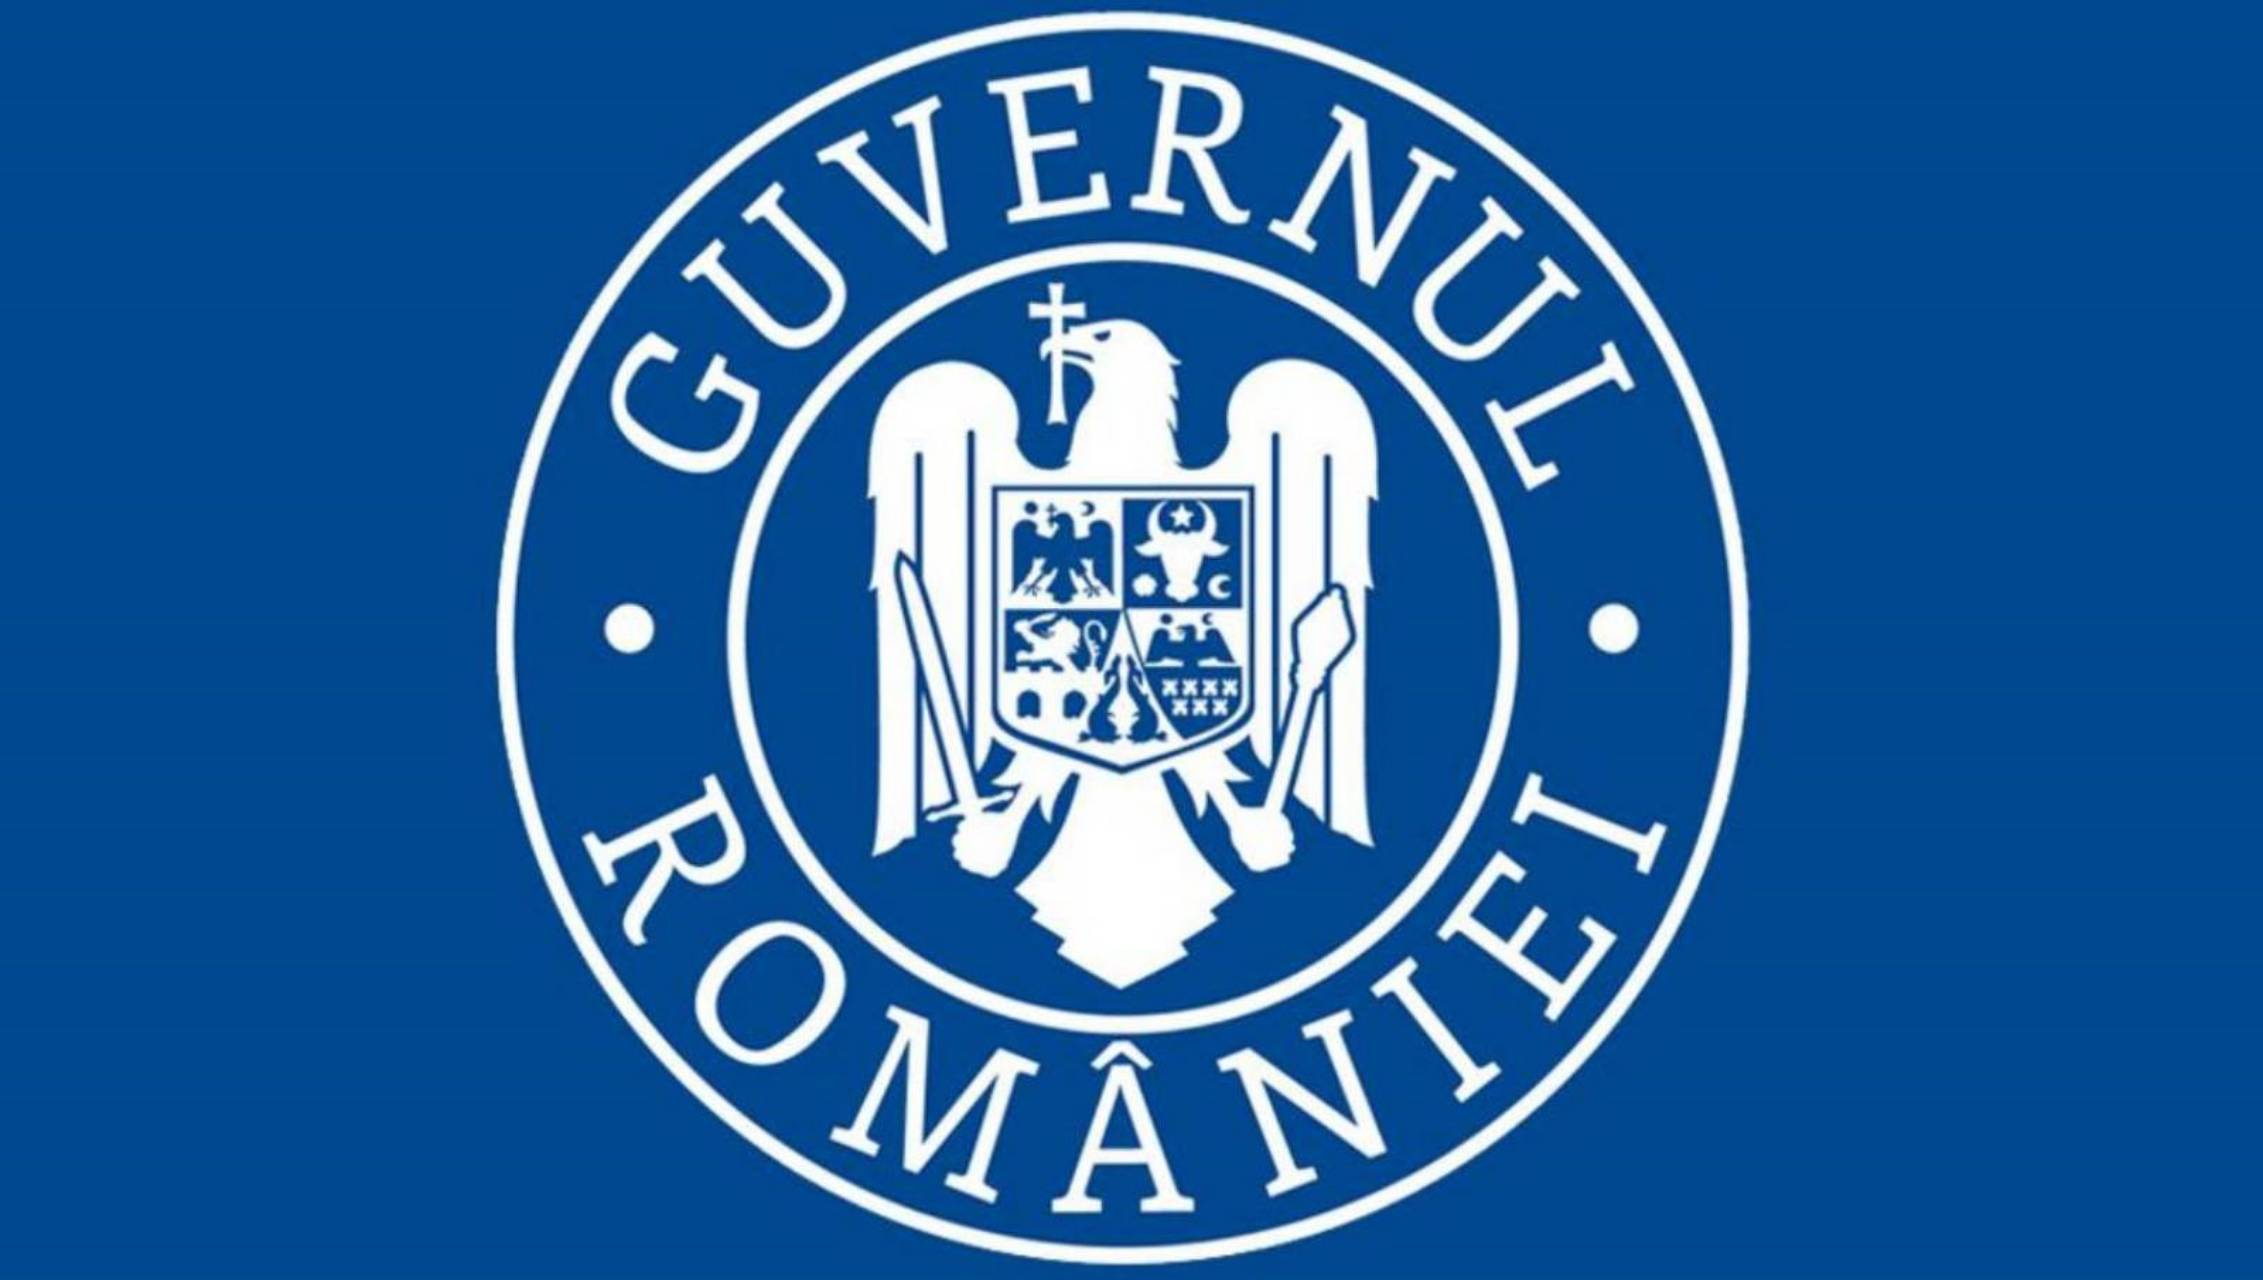 Guvernul Romaniei tratarea asimptomaticilor